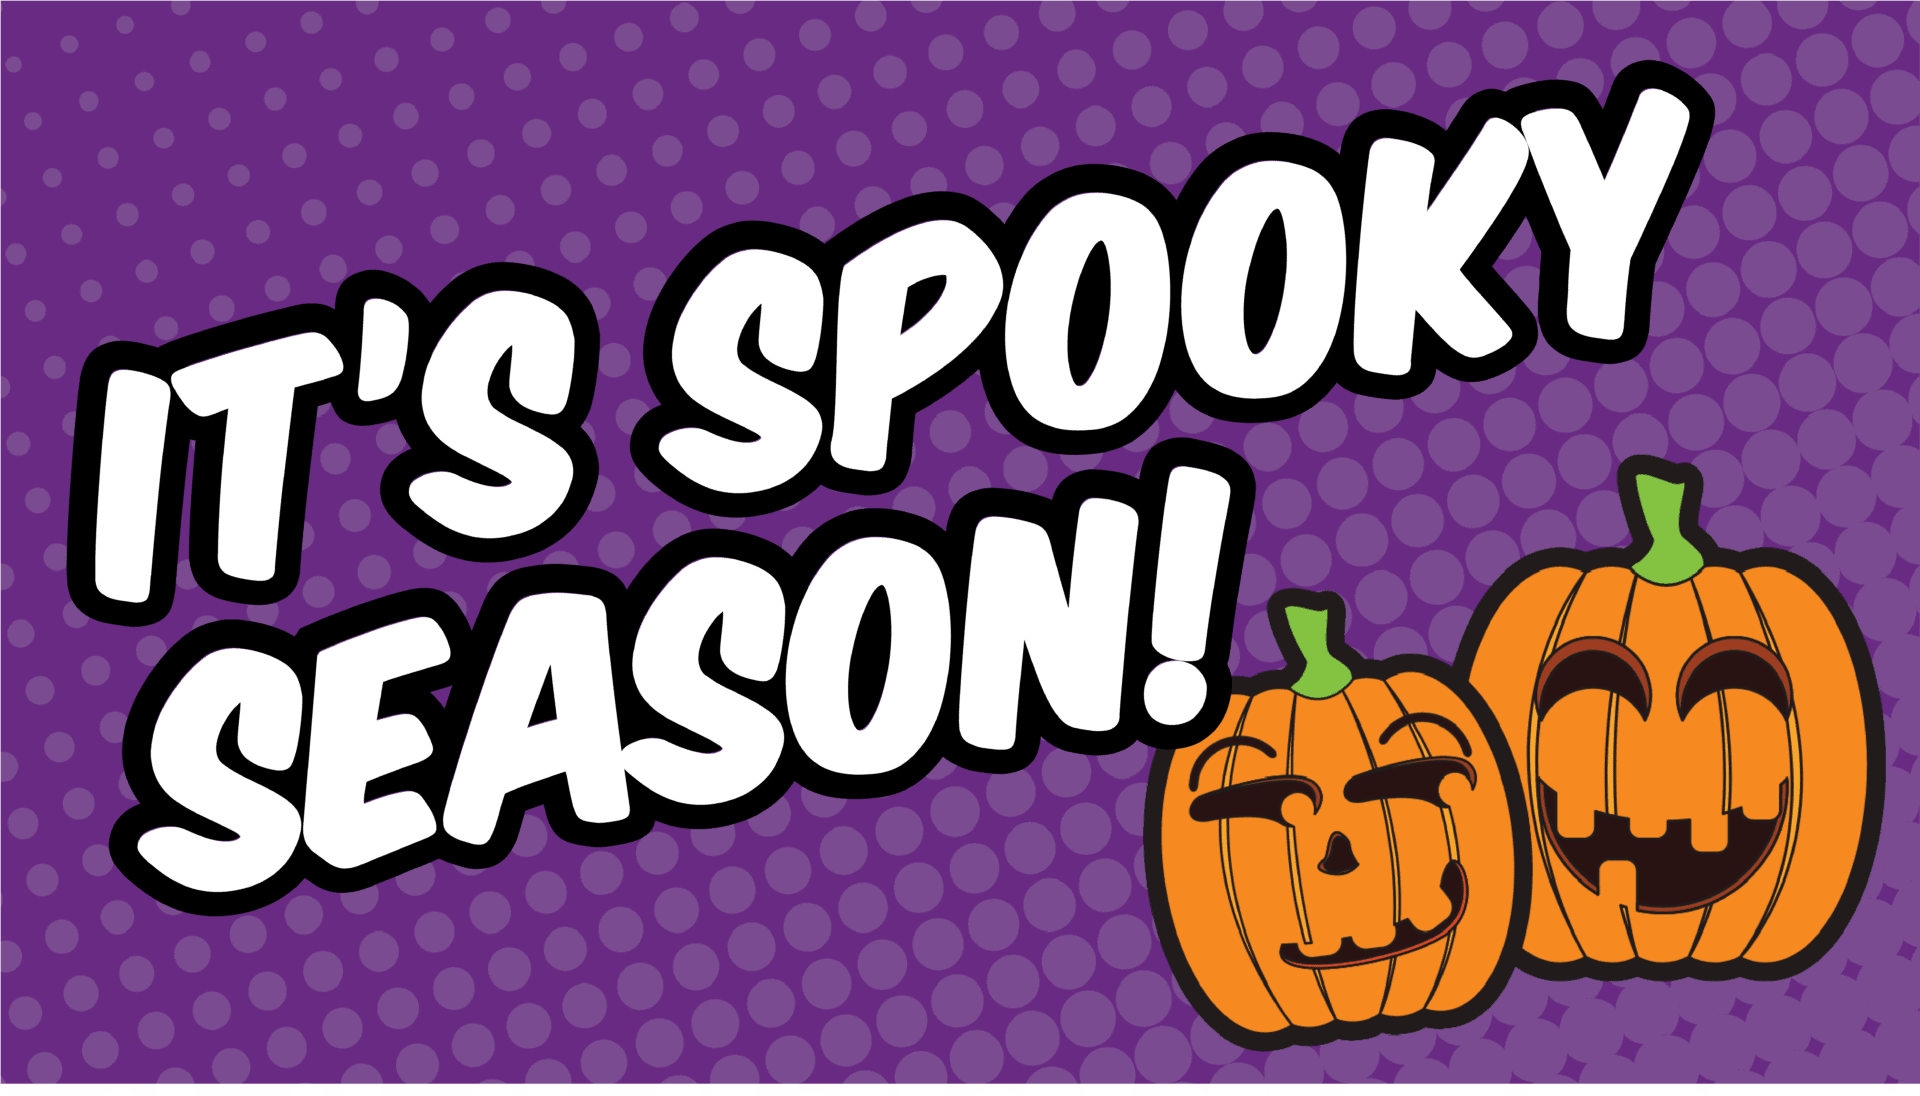 It's Spooky Fun Season.